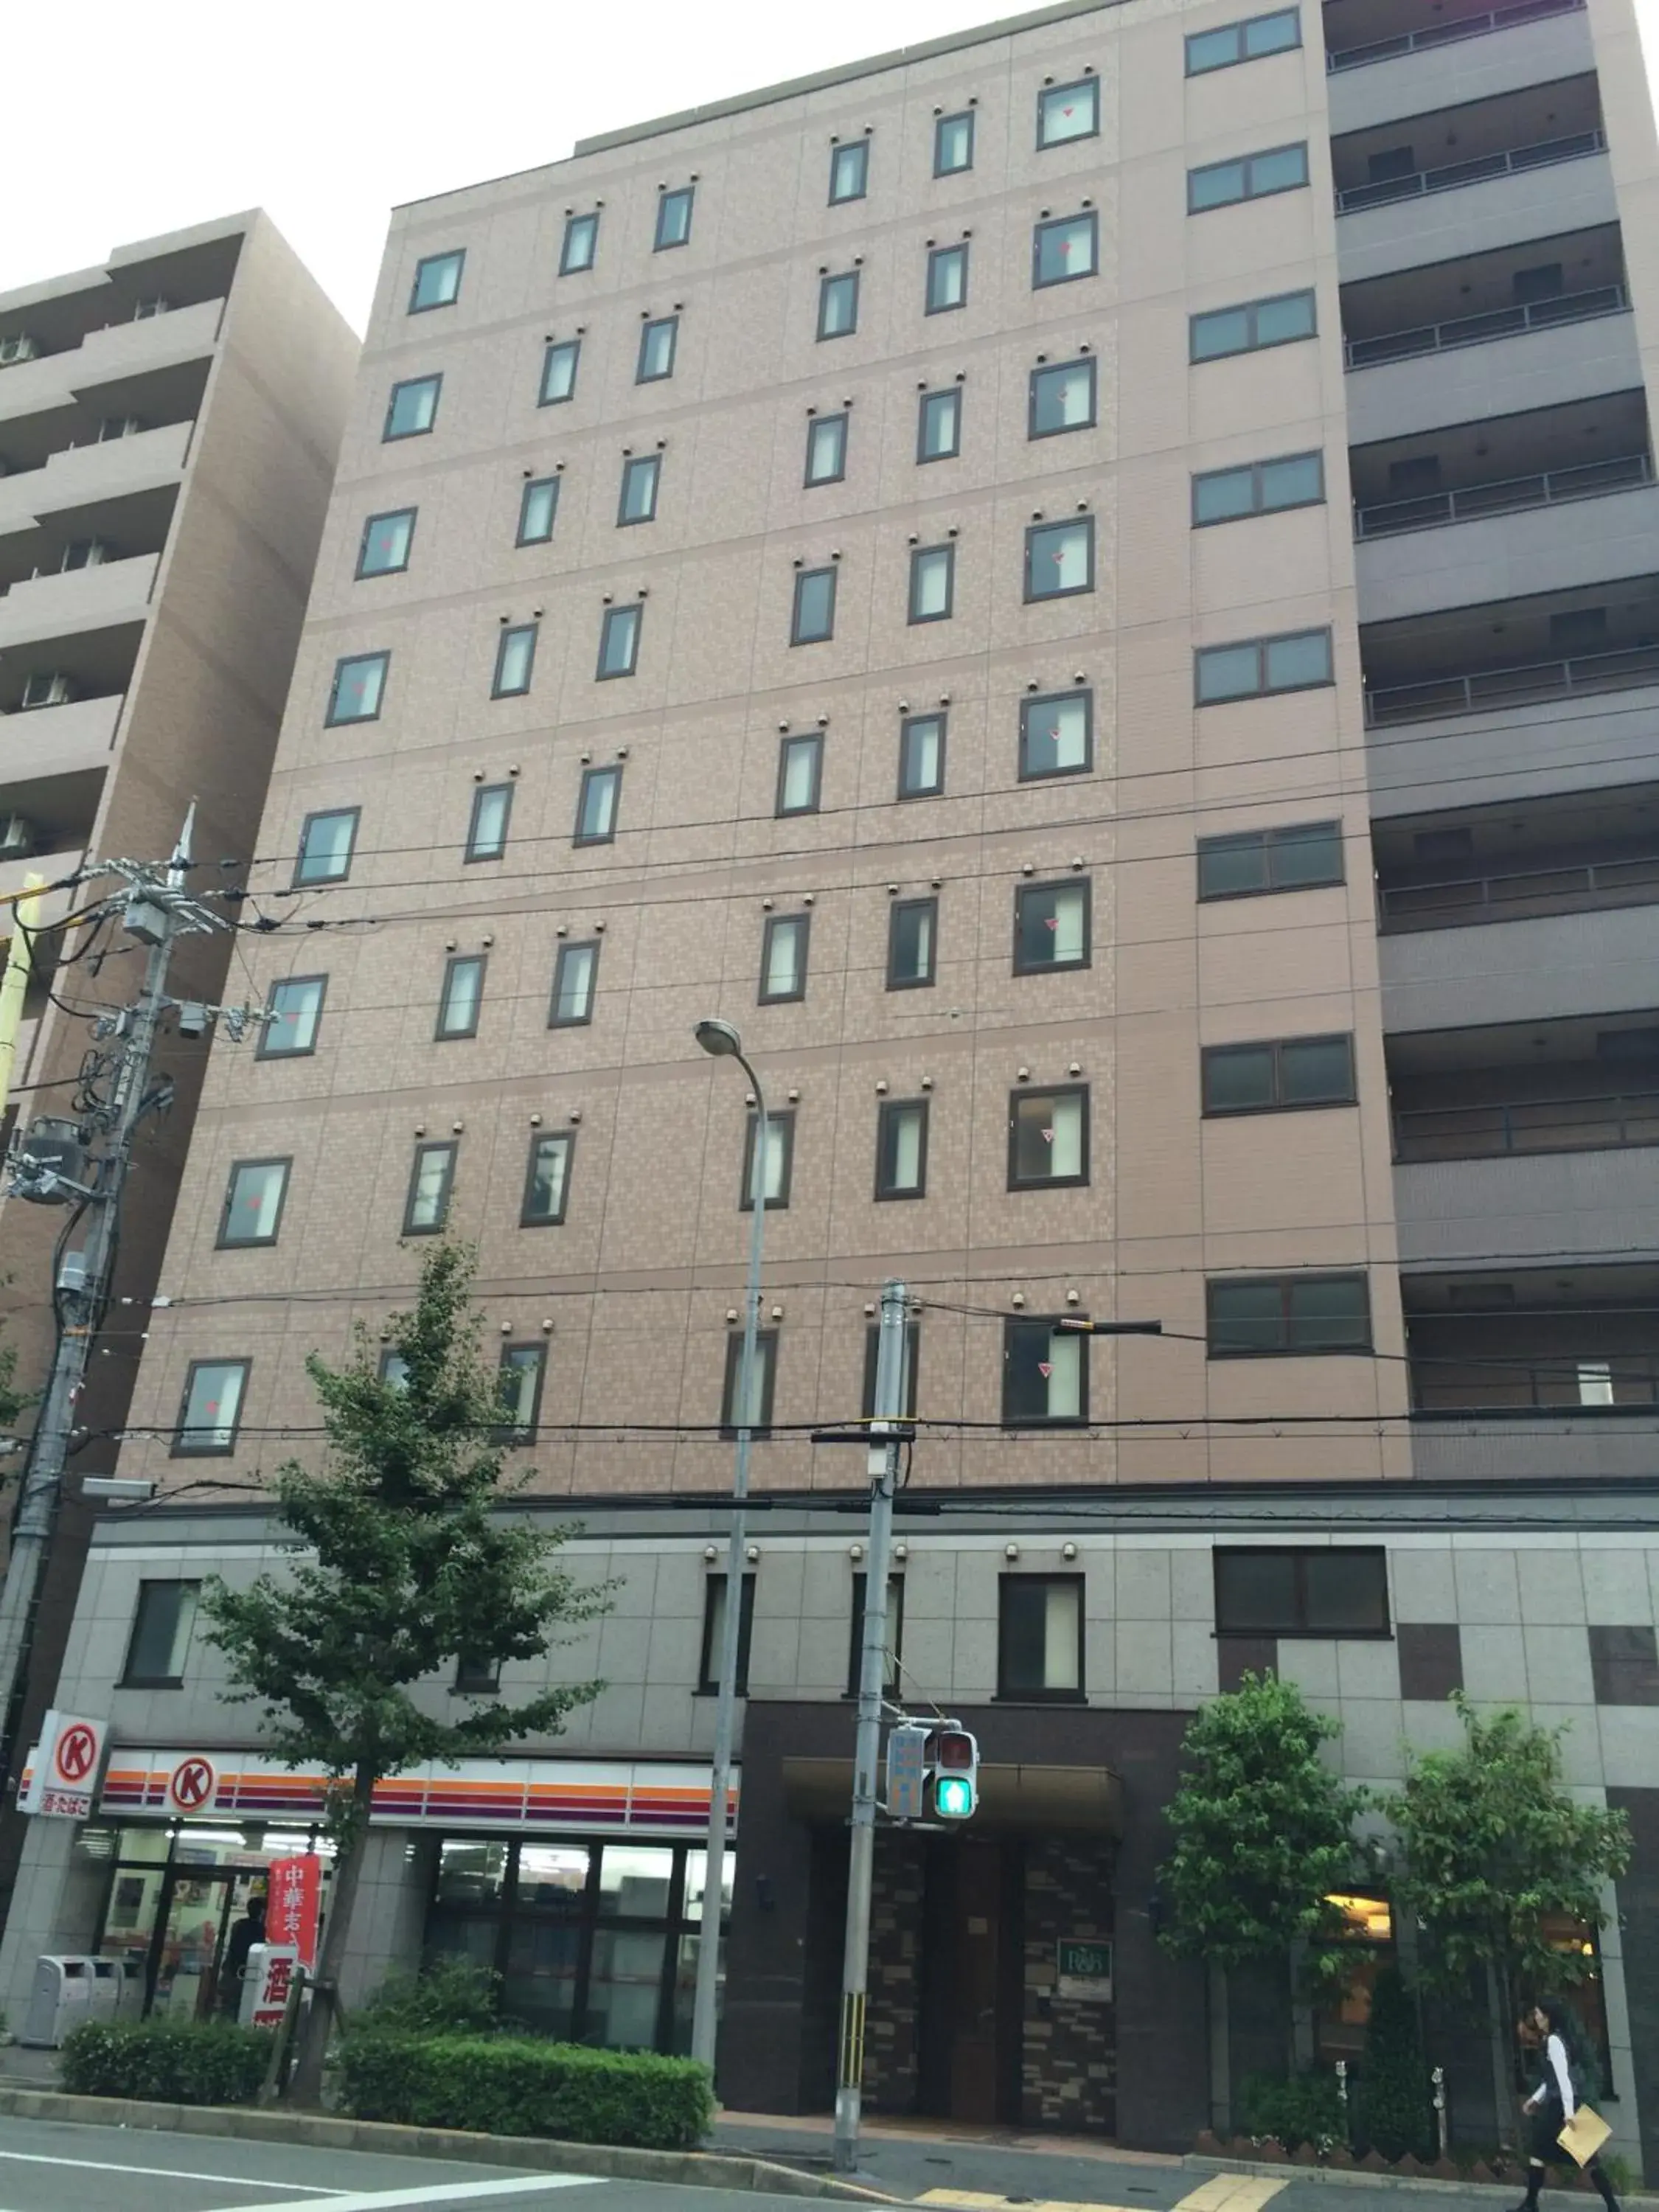 Facade/entrance, Property Building in R&B Hotel Kyoto Station Hachijoguchi